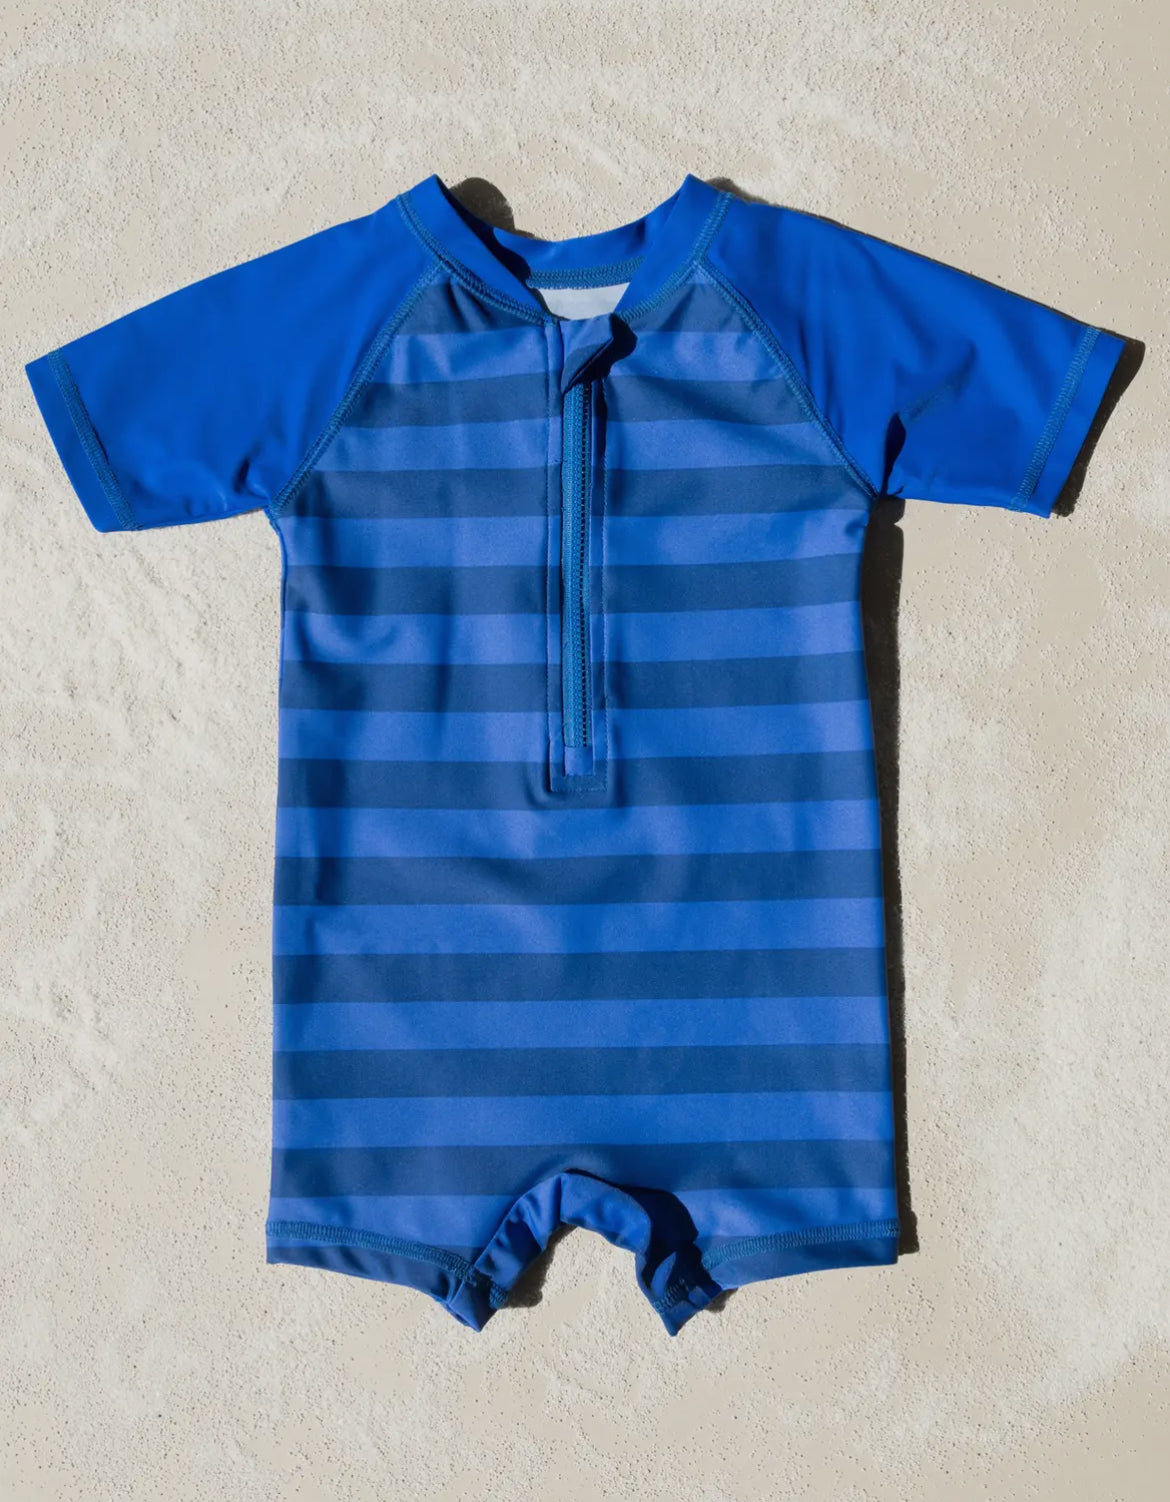 Kid’s Baby One Piece Rashguard Swim Navy Stripes